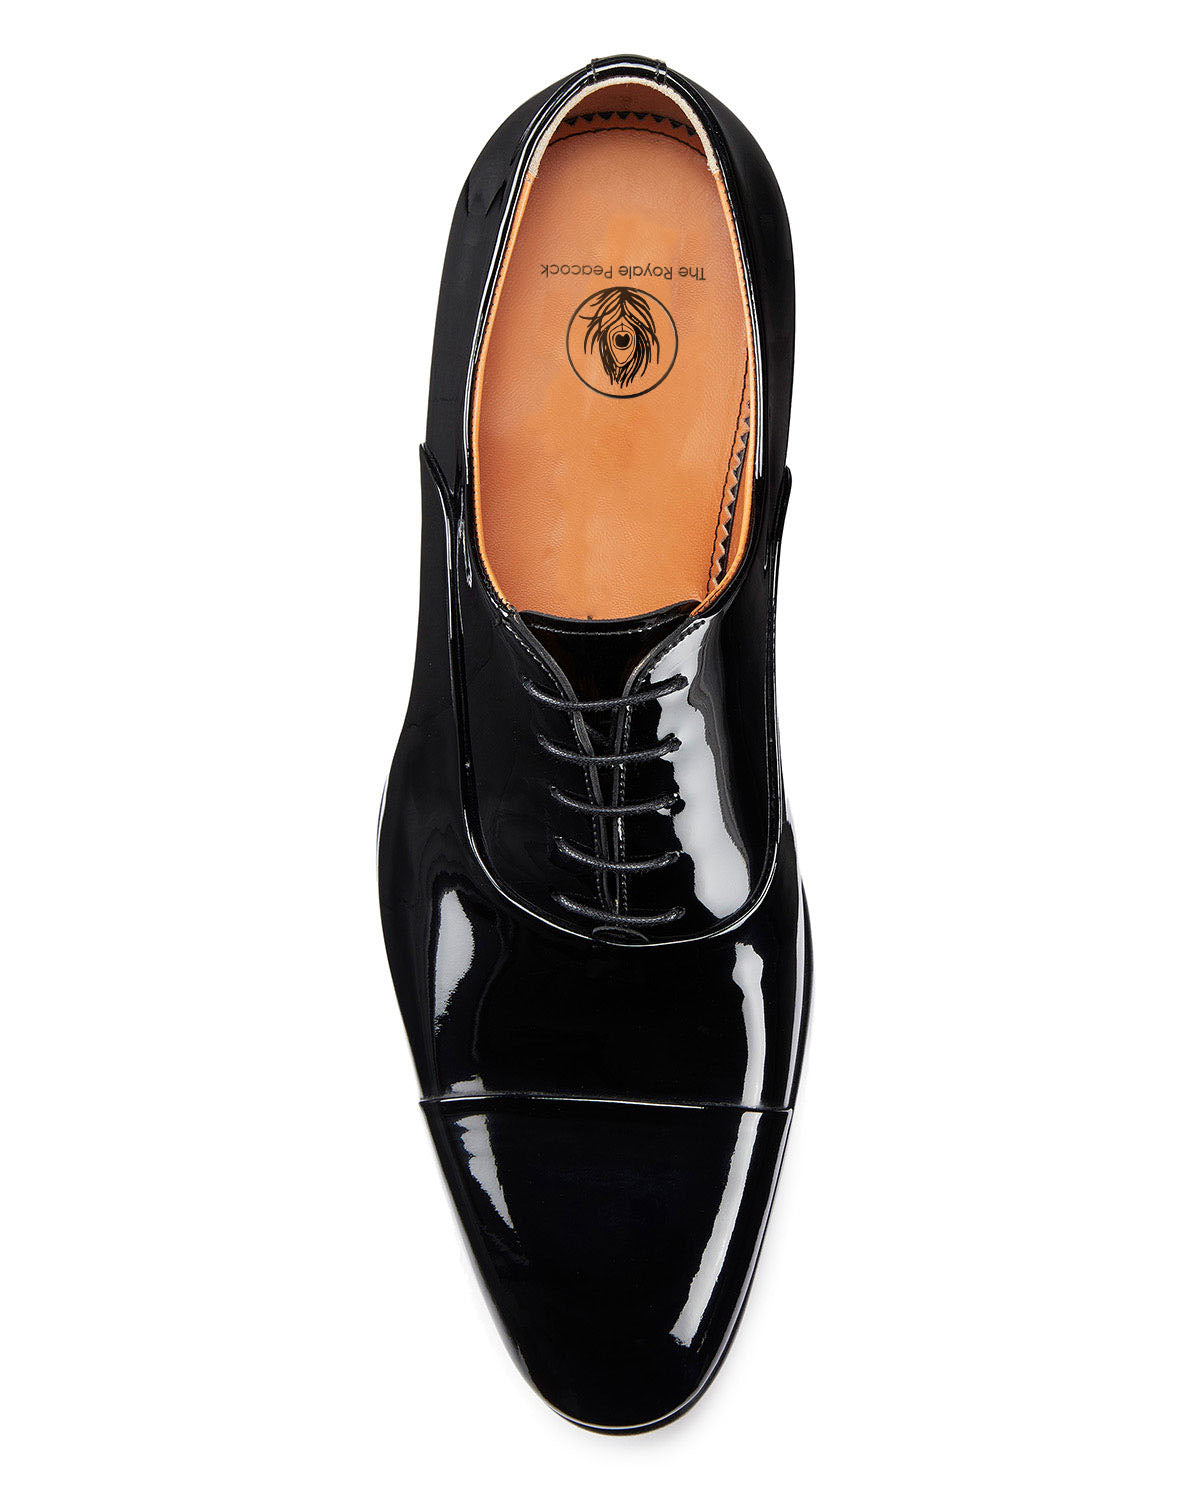 Male Patent Leather Dress Shoes Uniform – Vanguard Industries